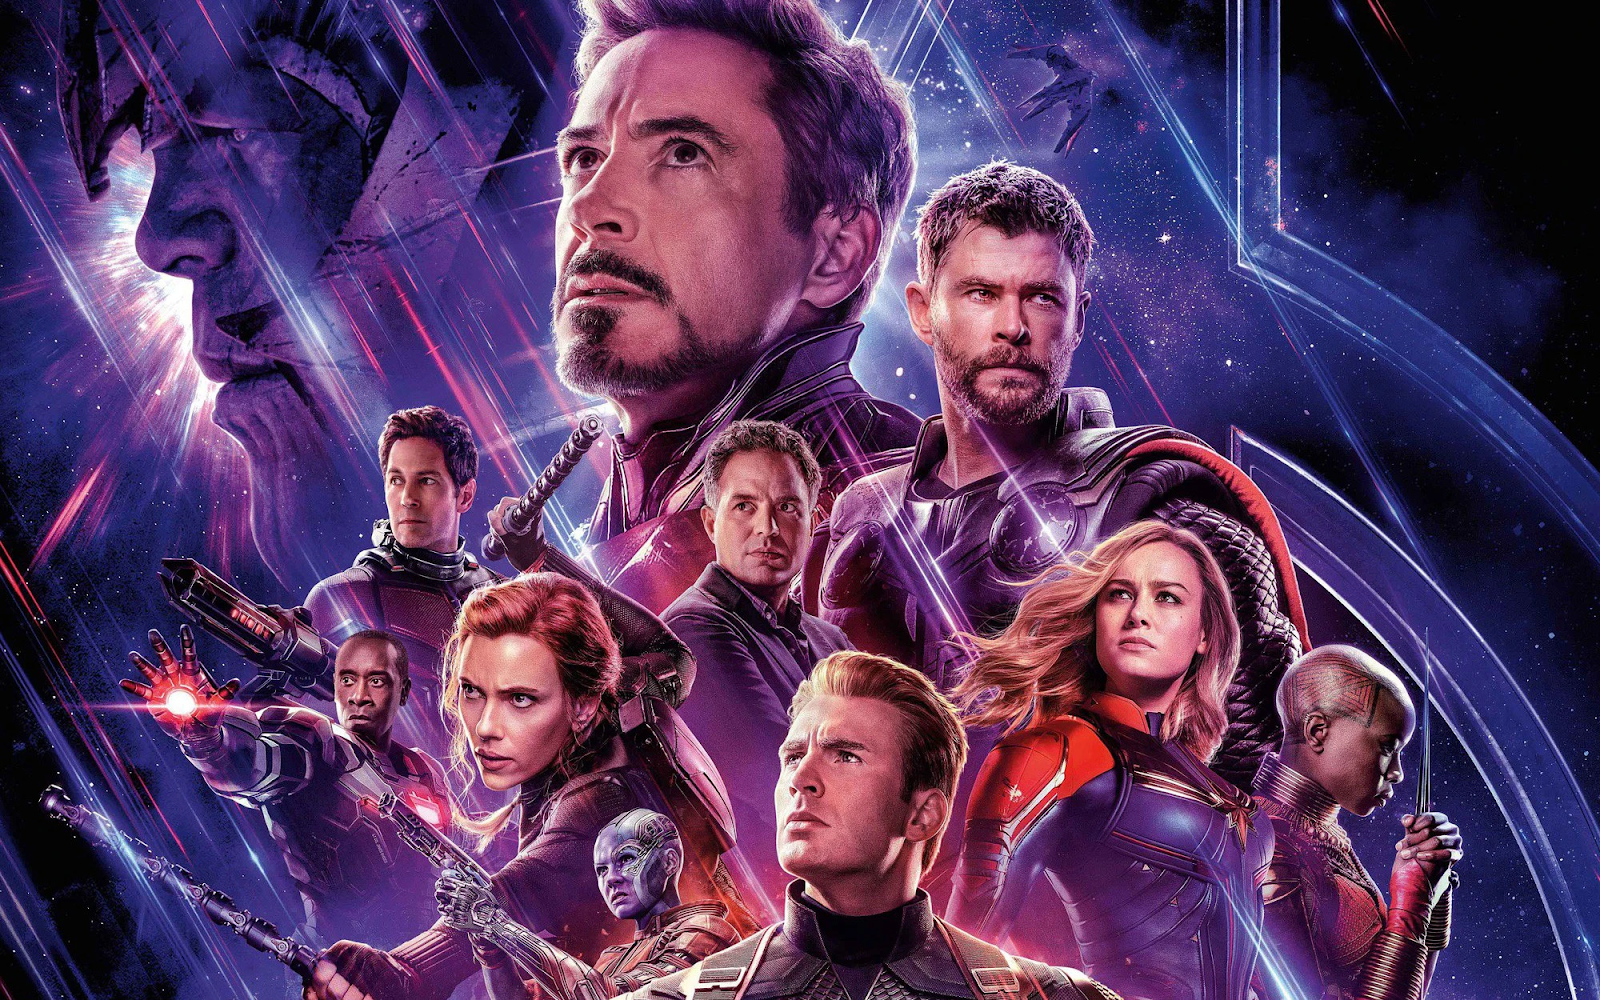 Phim Marvel chạy khách nhất từng thời đại “Avengers: Endgame” – Hồi kết (2019)